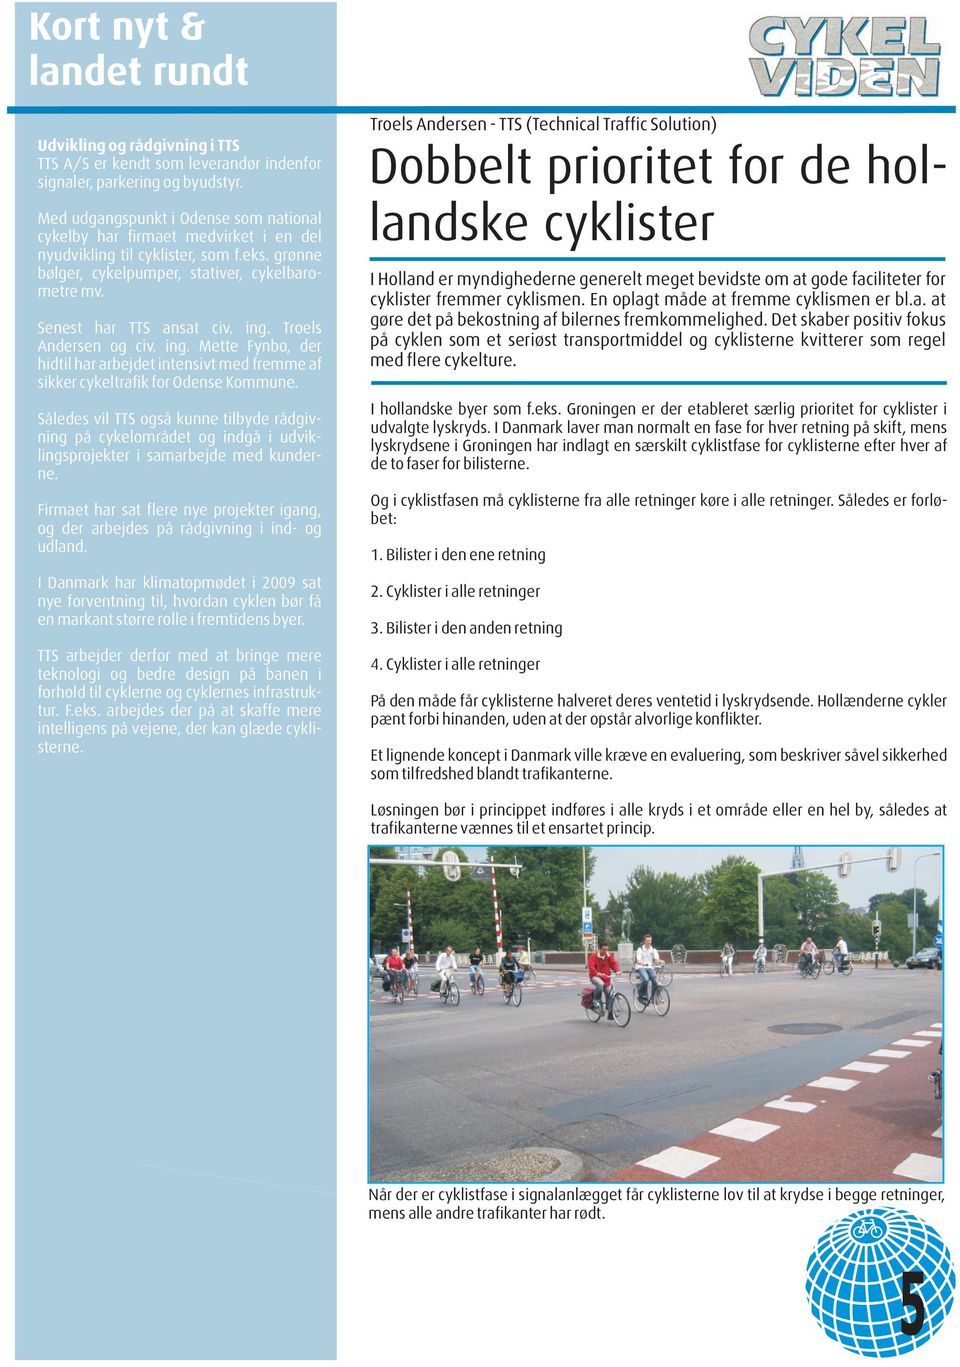 ing. Troels Andersen og civ. ing. Mette Fynbo, der hidtil har arbejdet intensivt med fremme af sikker cykeltrafik for Odense Kommune.